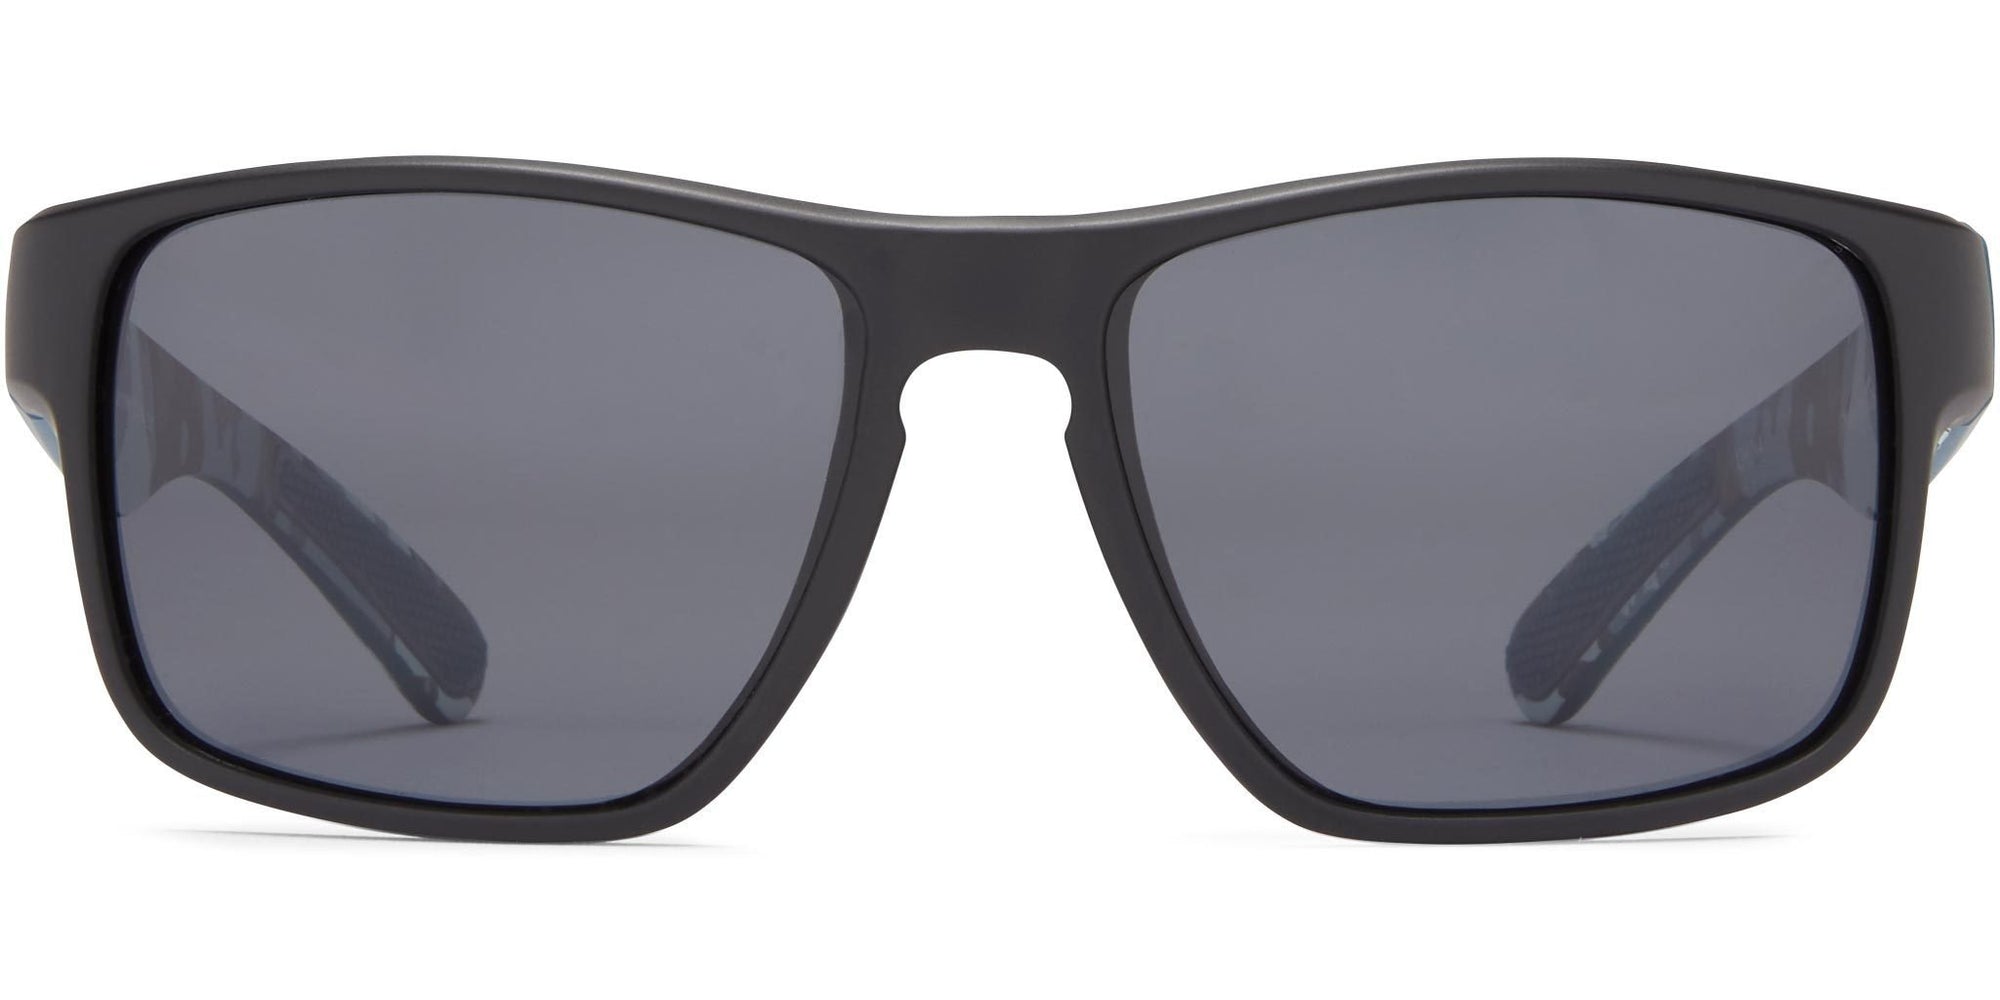 Maverick - Matte Black/Gray Lens - Polarized Sunglasses